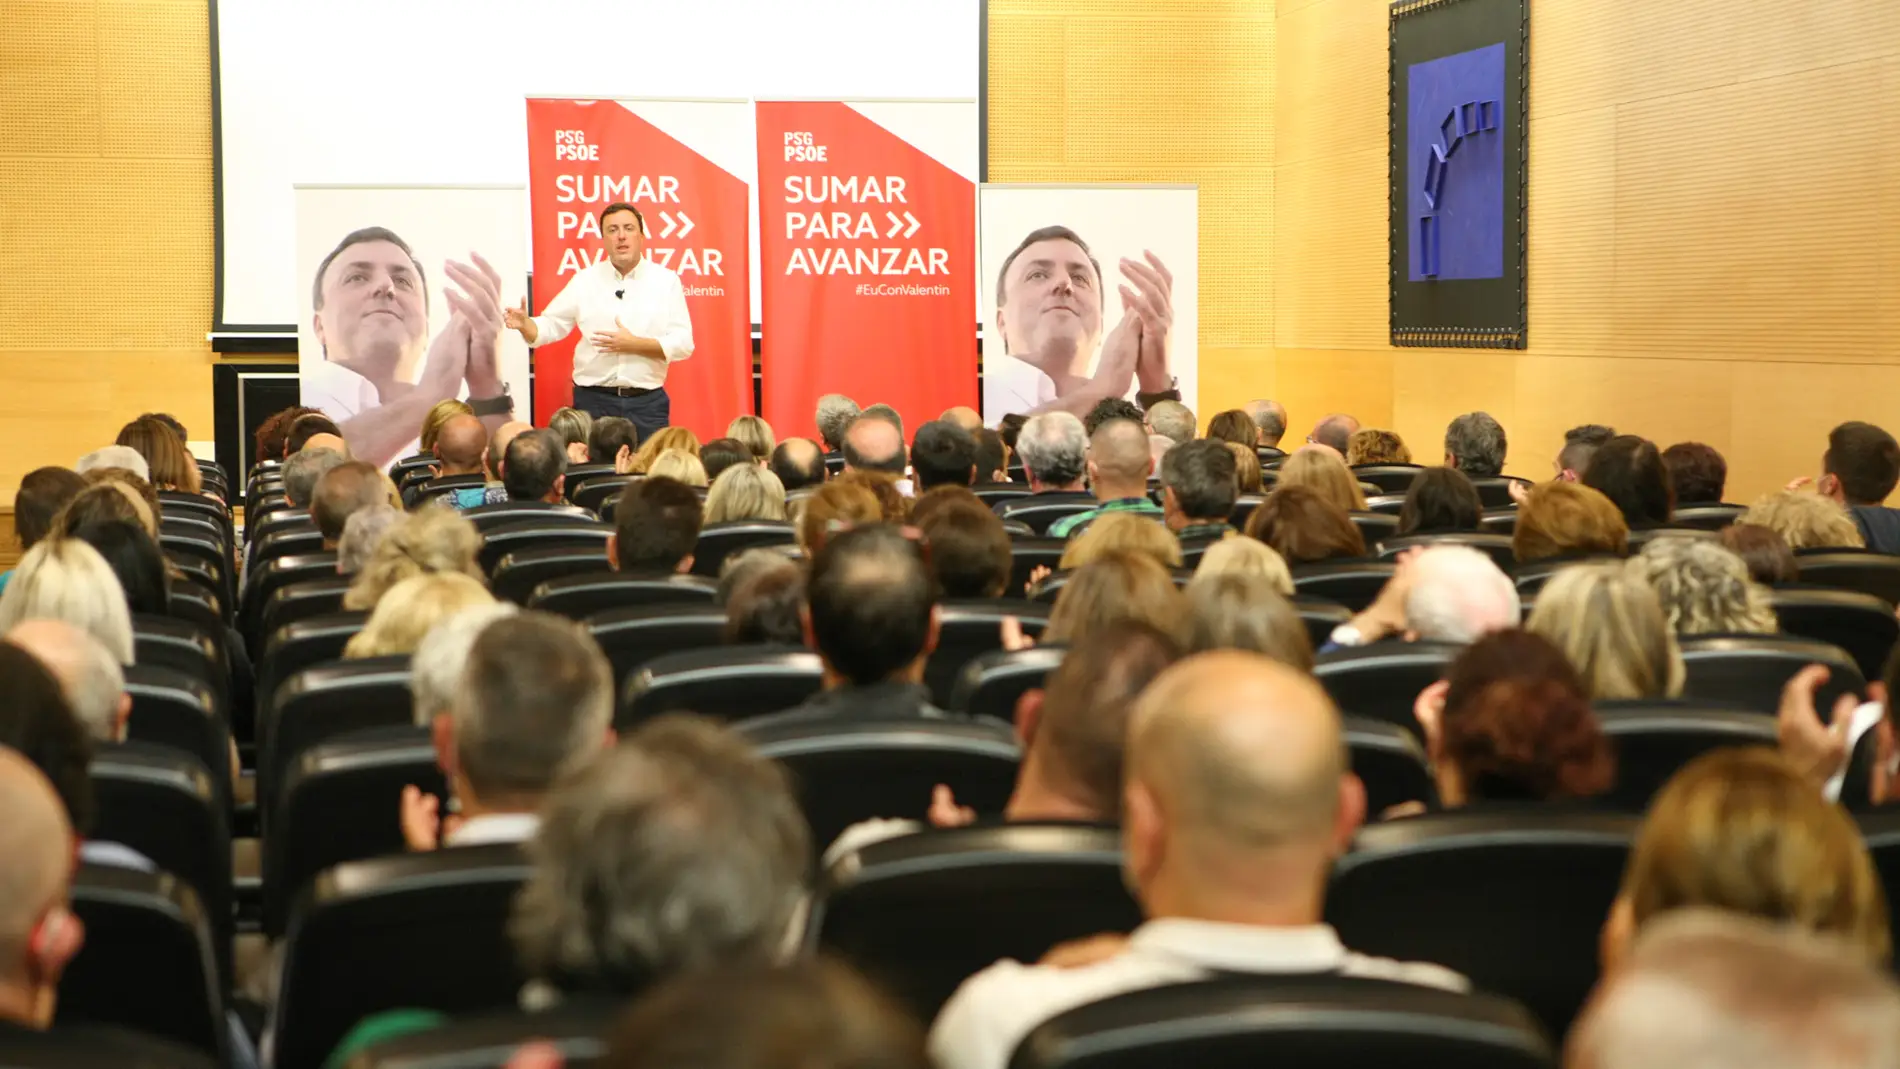 Formoso presenta en Ourense dez propostas “para sumar e avanzar” no PSdeG